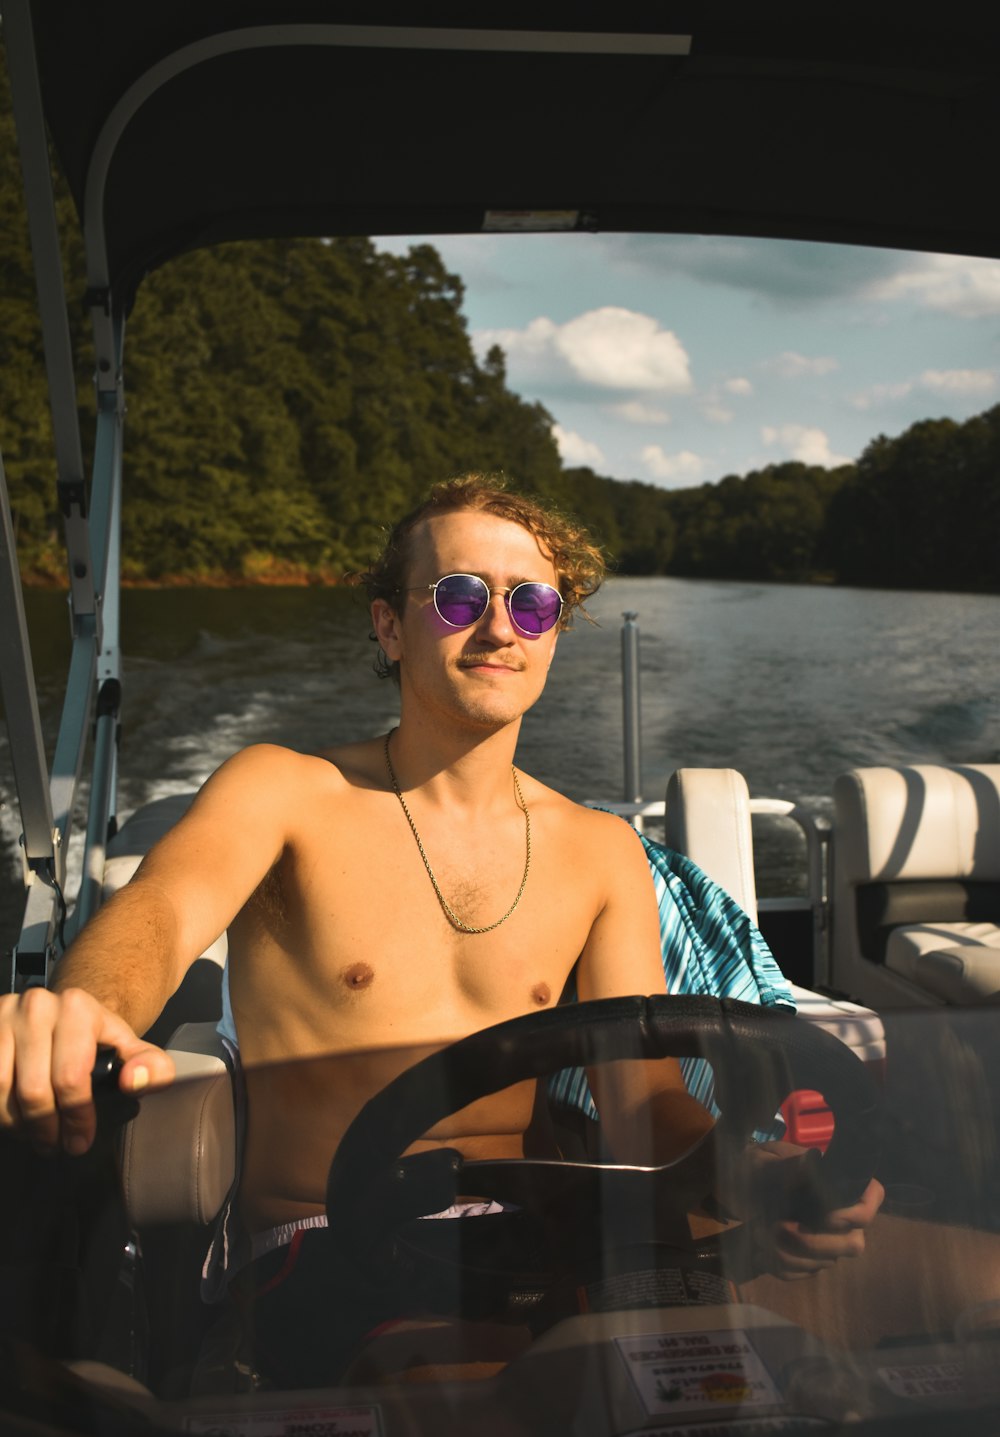 Un homme torse nu conduisant un bateau sur un lac